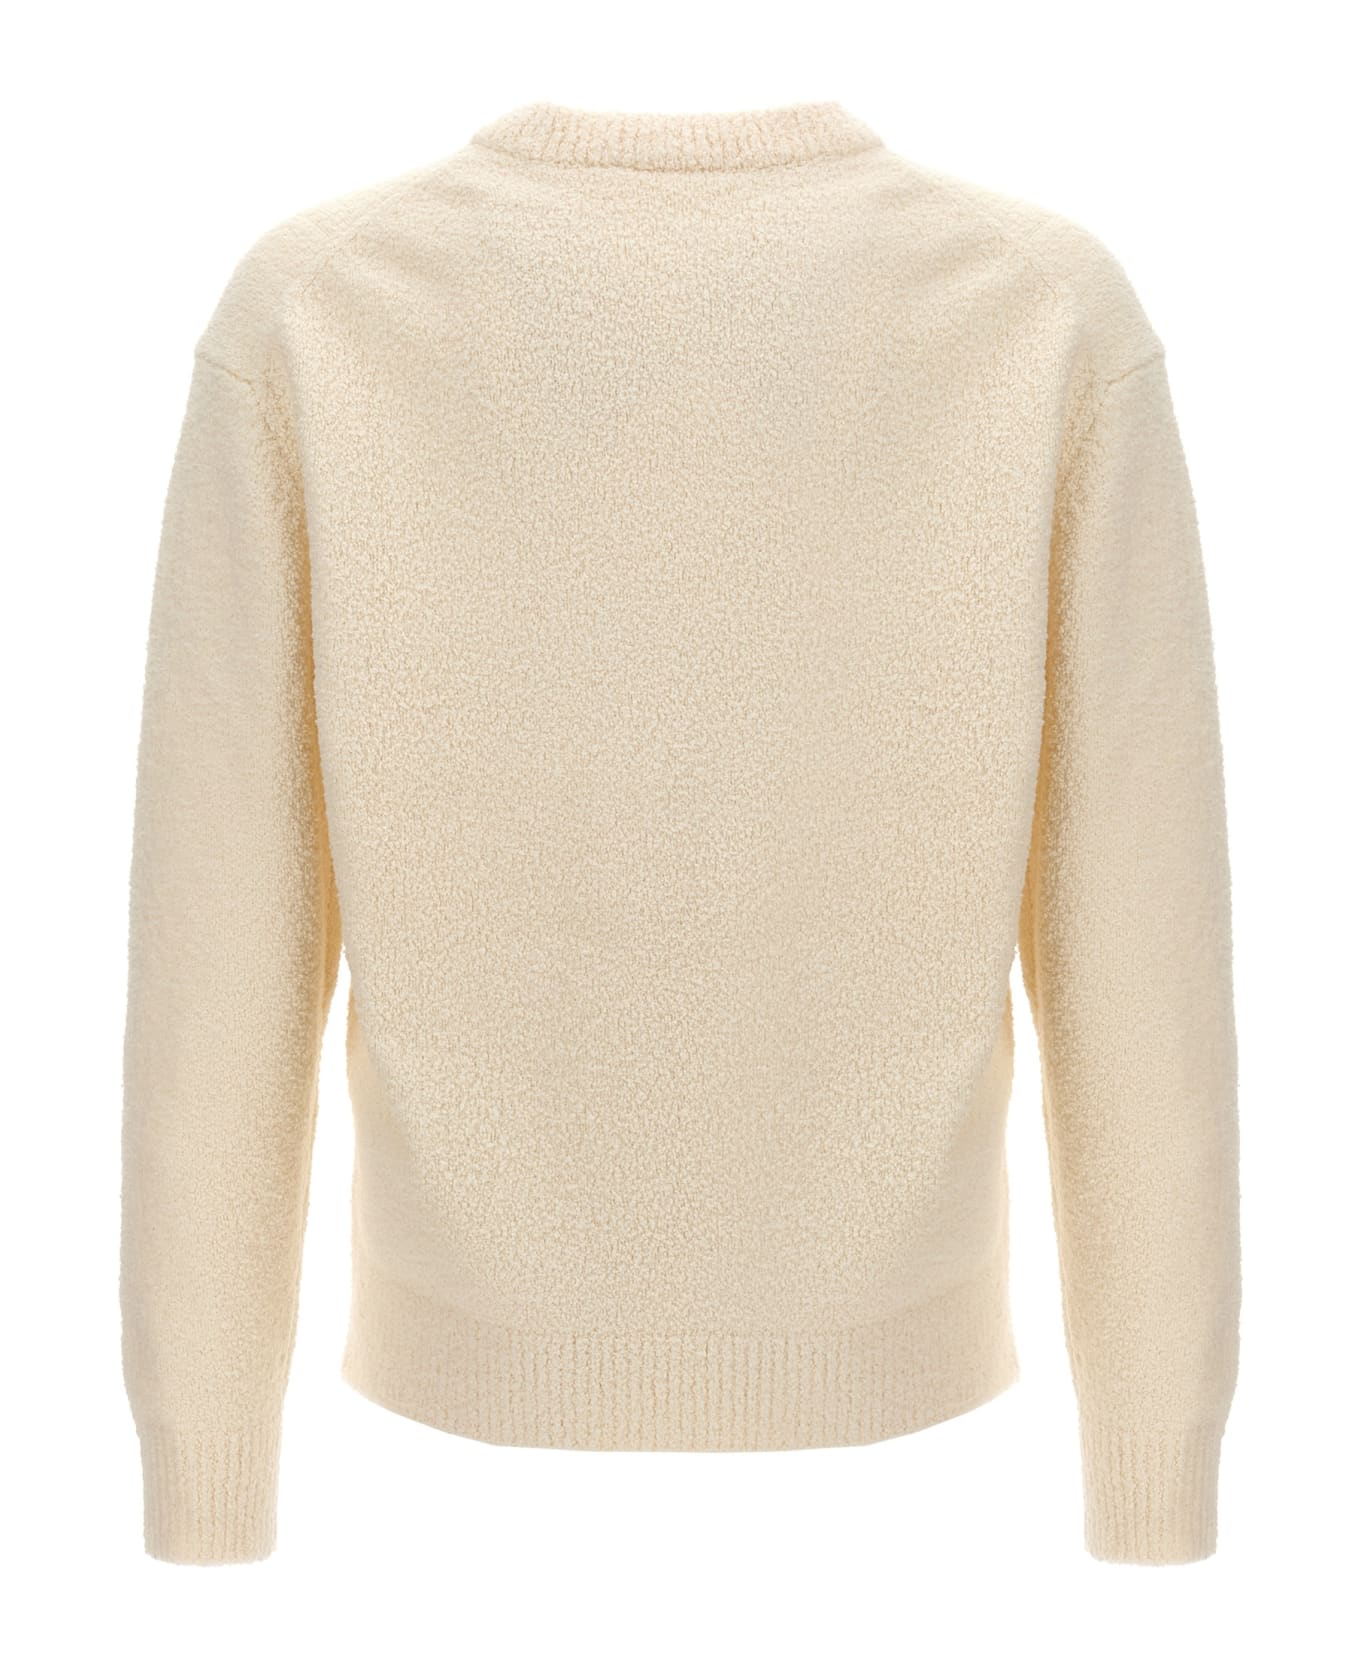 Axel Arigato 'radar' Sweater - White